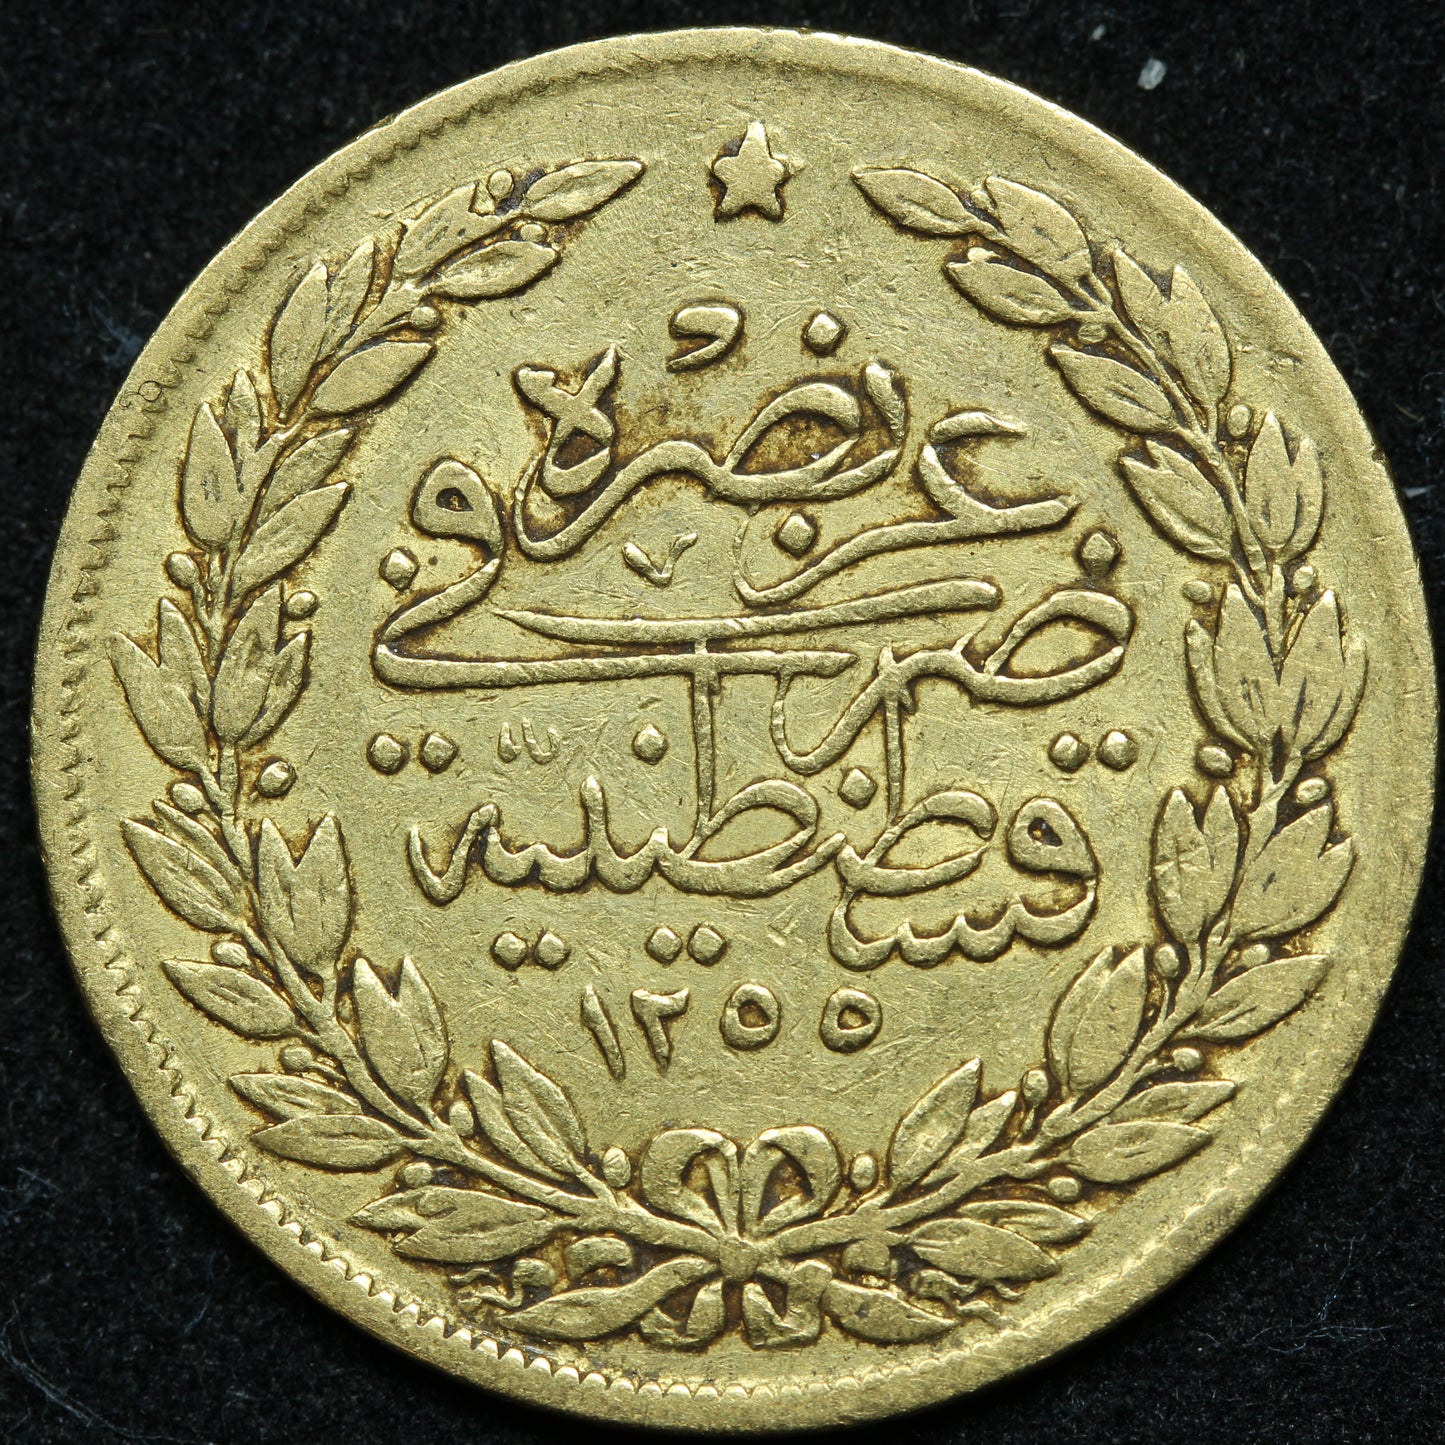 Turkey 100 Kurush 1255/15 AH (1839) Gold Coin